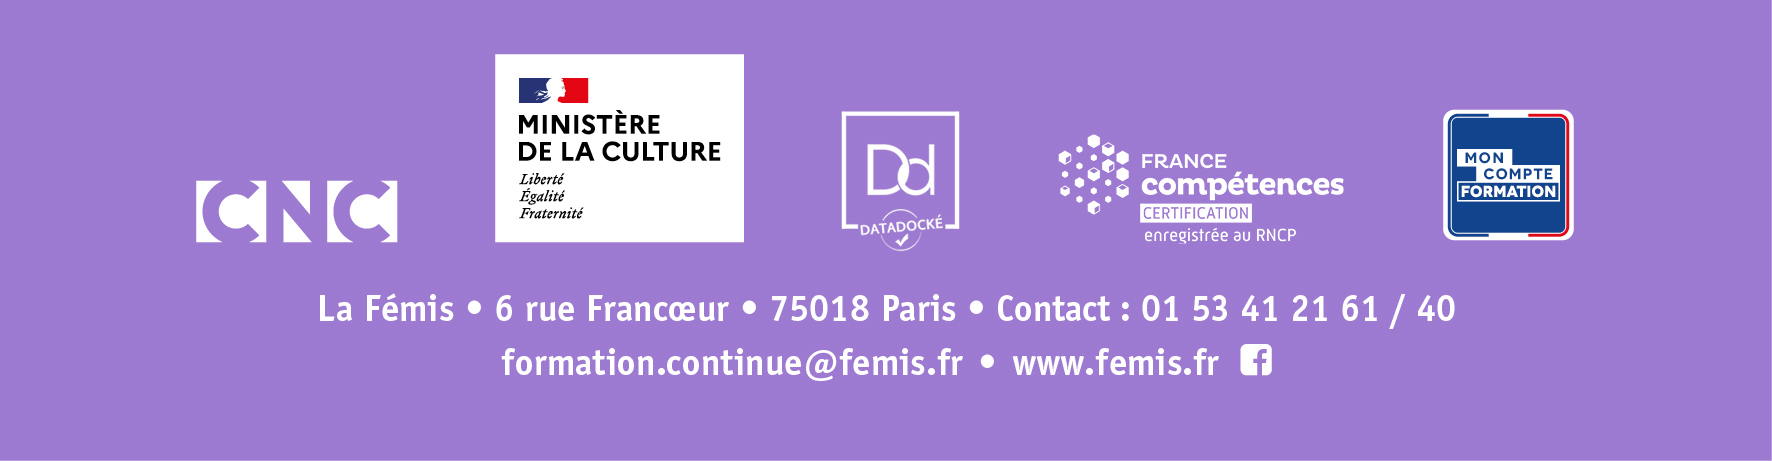 La Femis - Concevoir projet doc